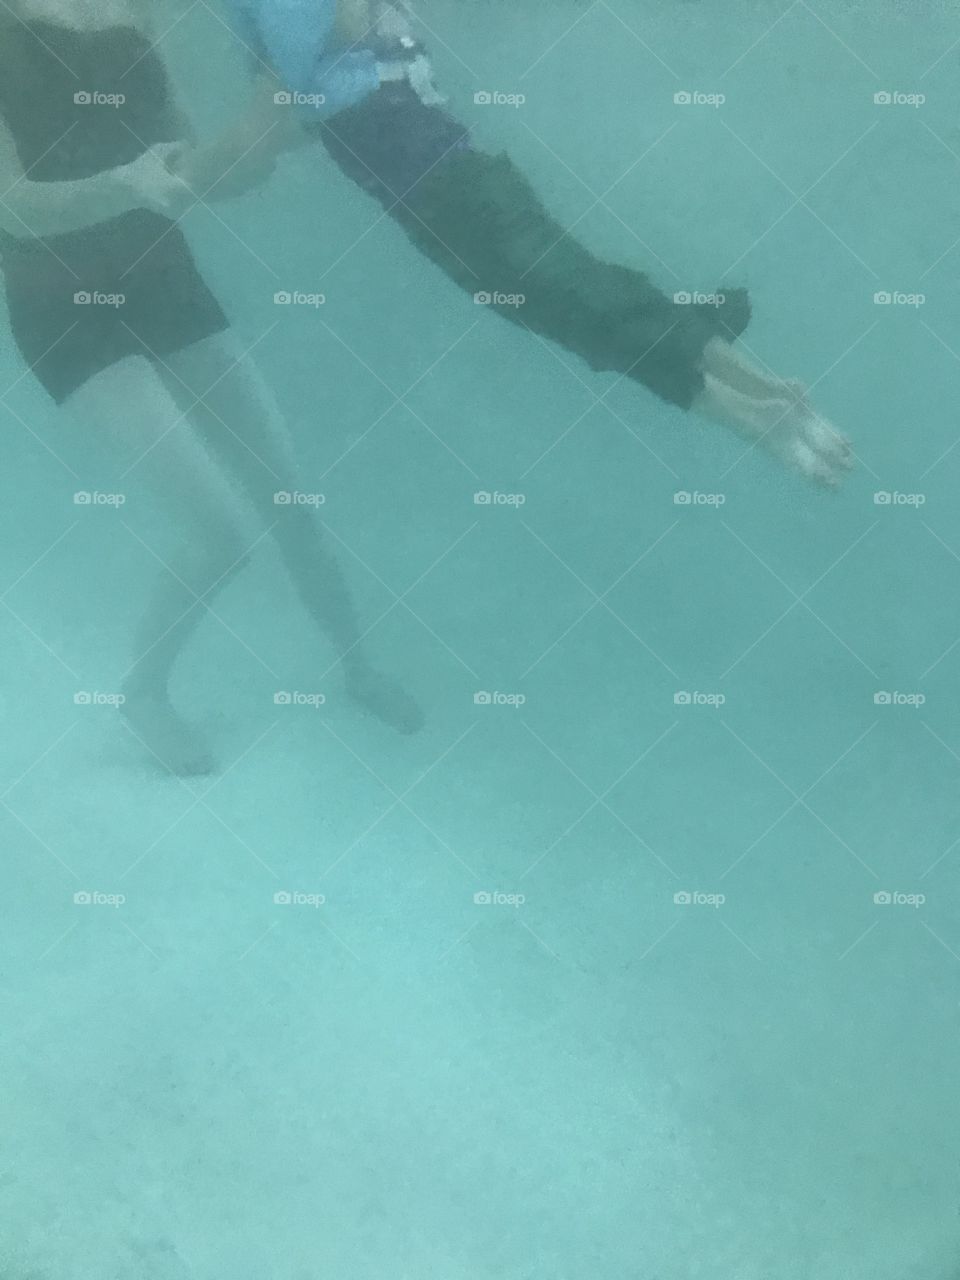 Mermaid in training